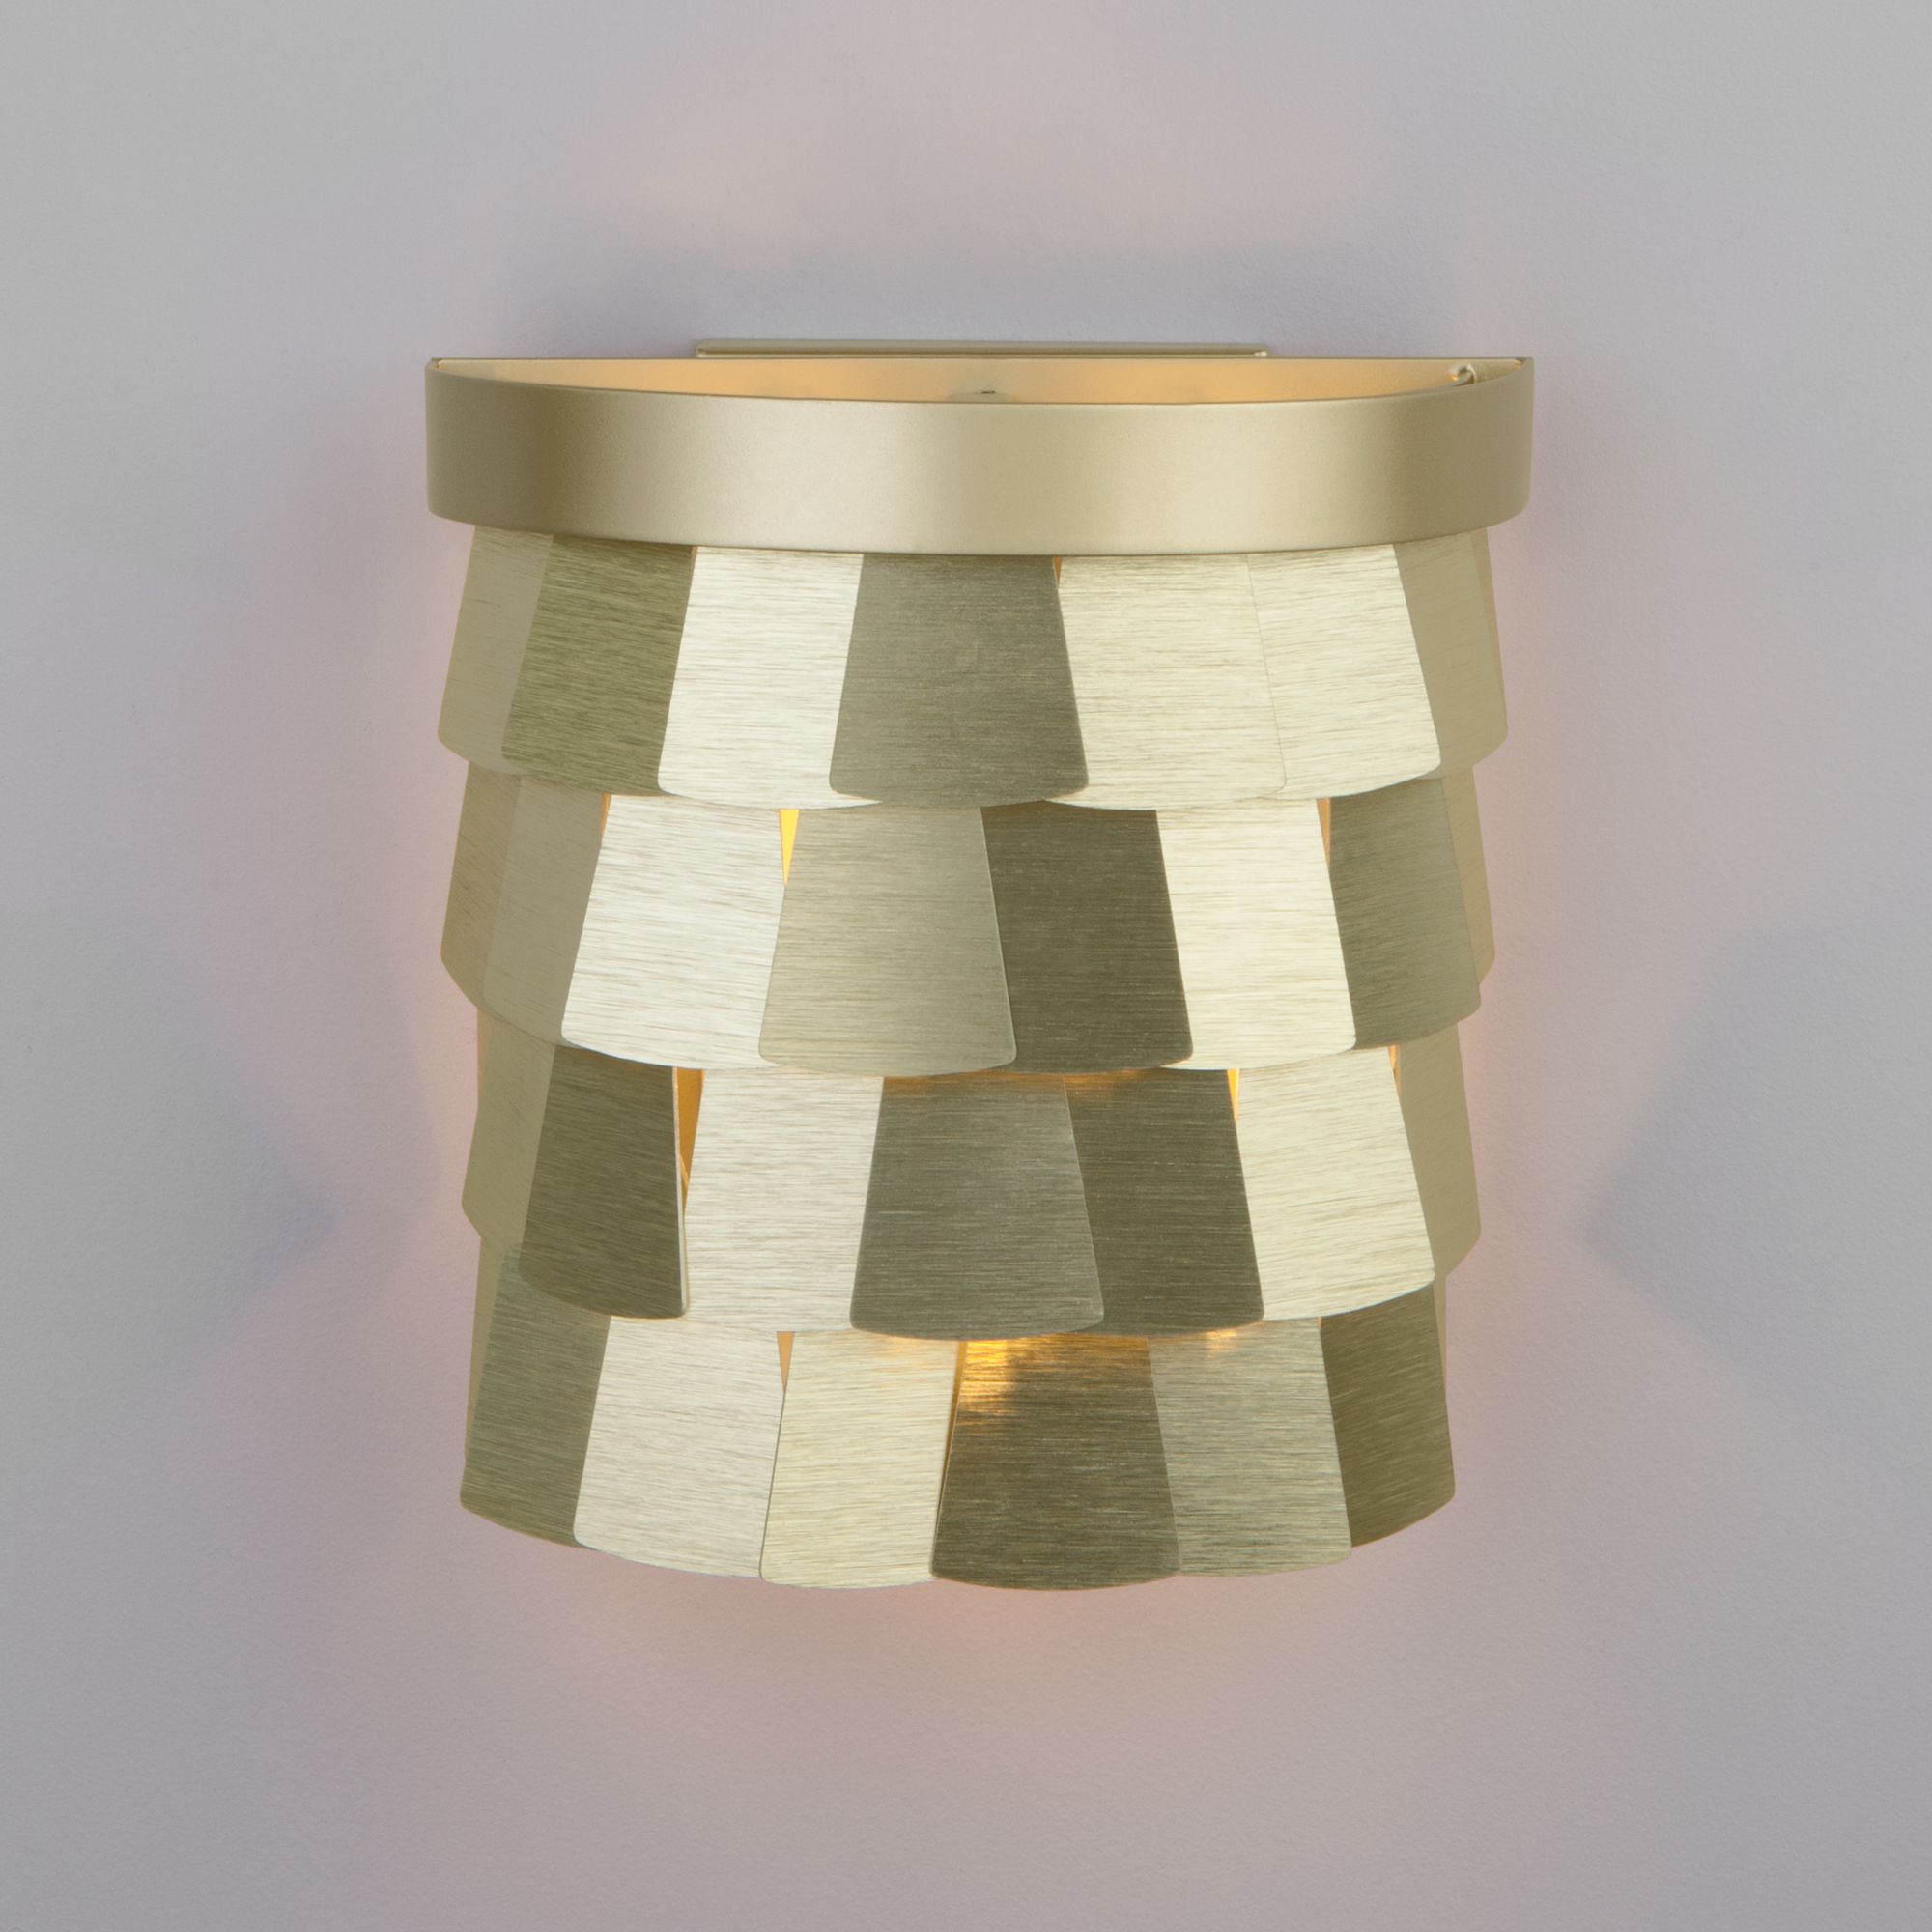 Настенный светильник с металлическим плафоном Bogate's Corazza 317  шампань. Фото 1